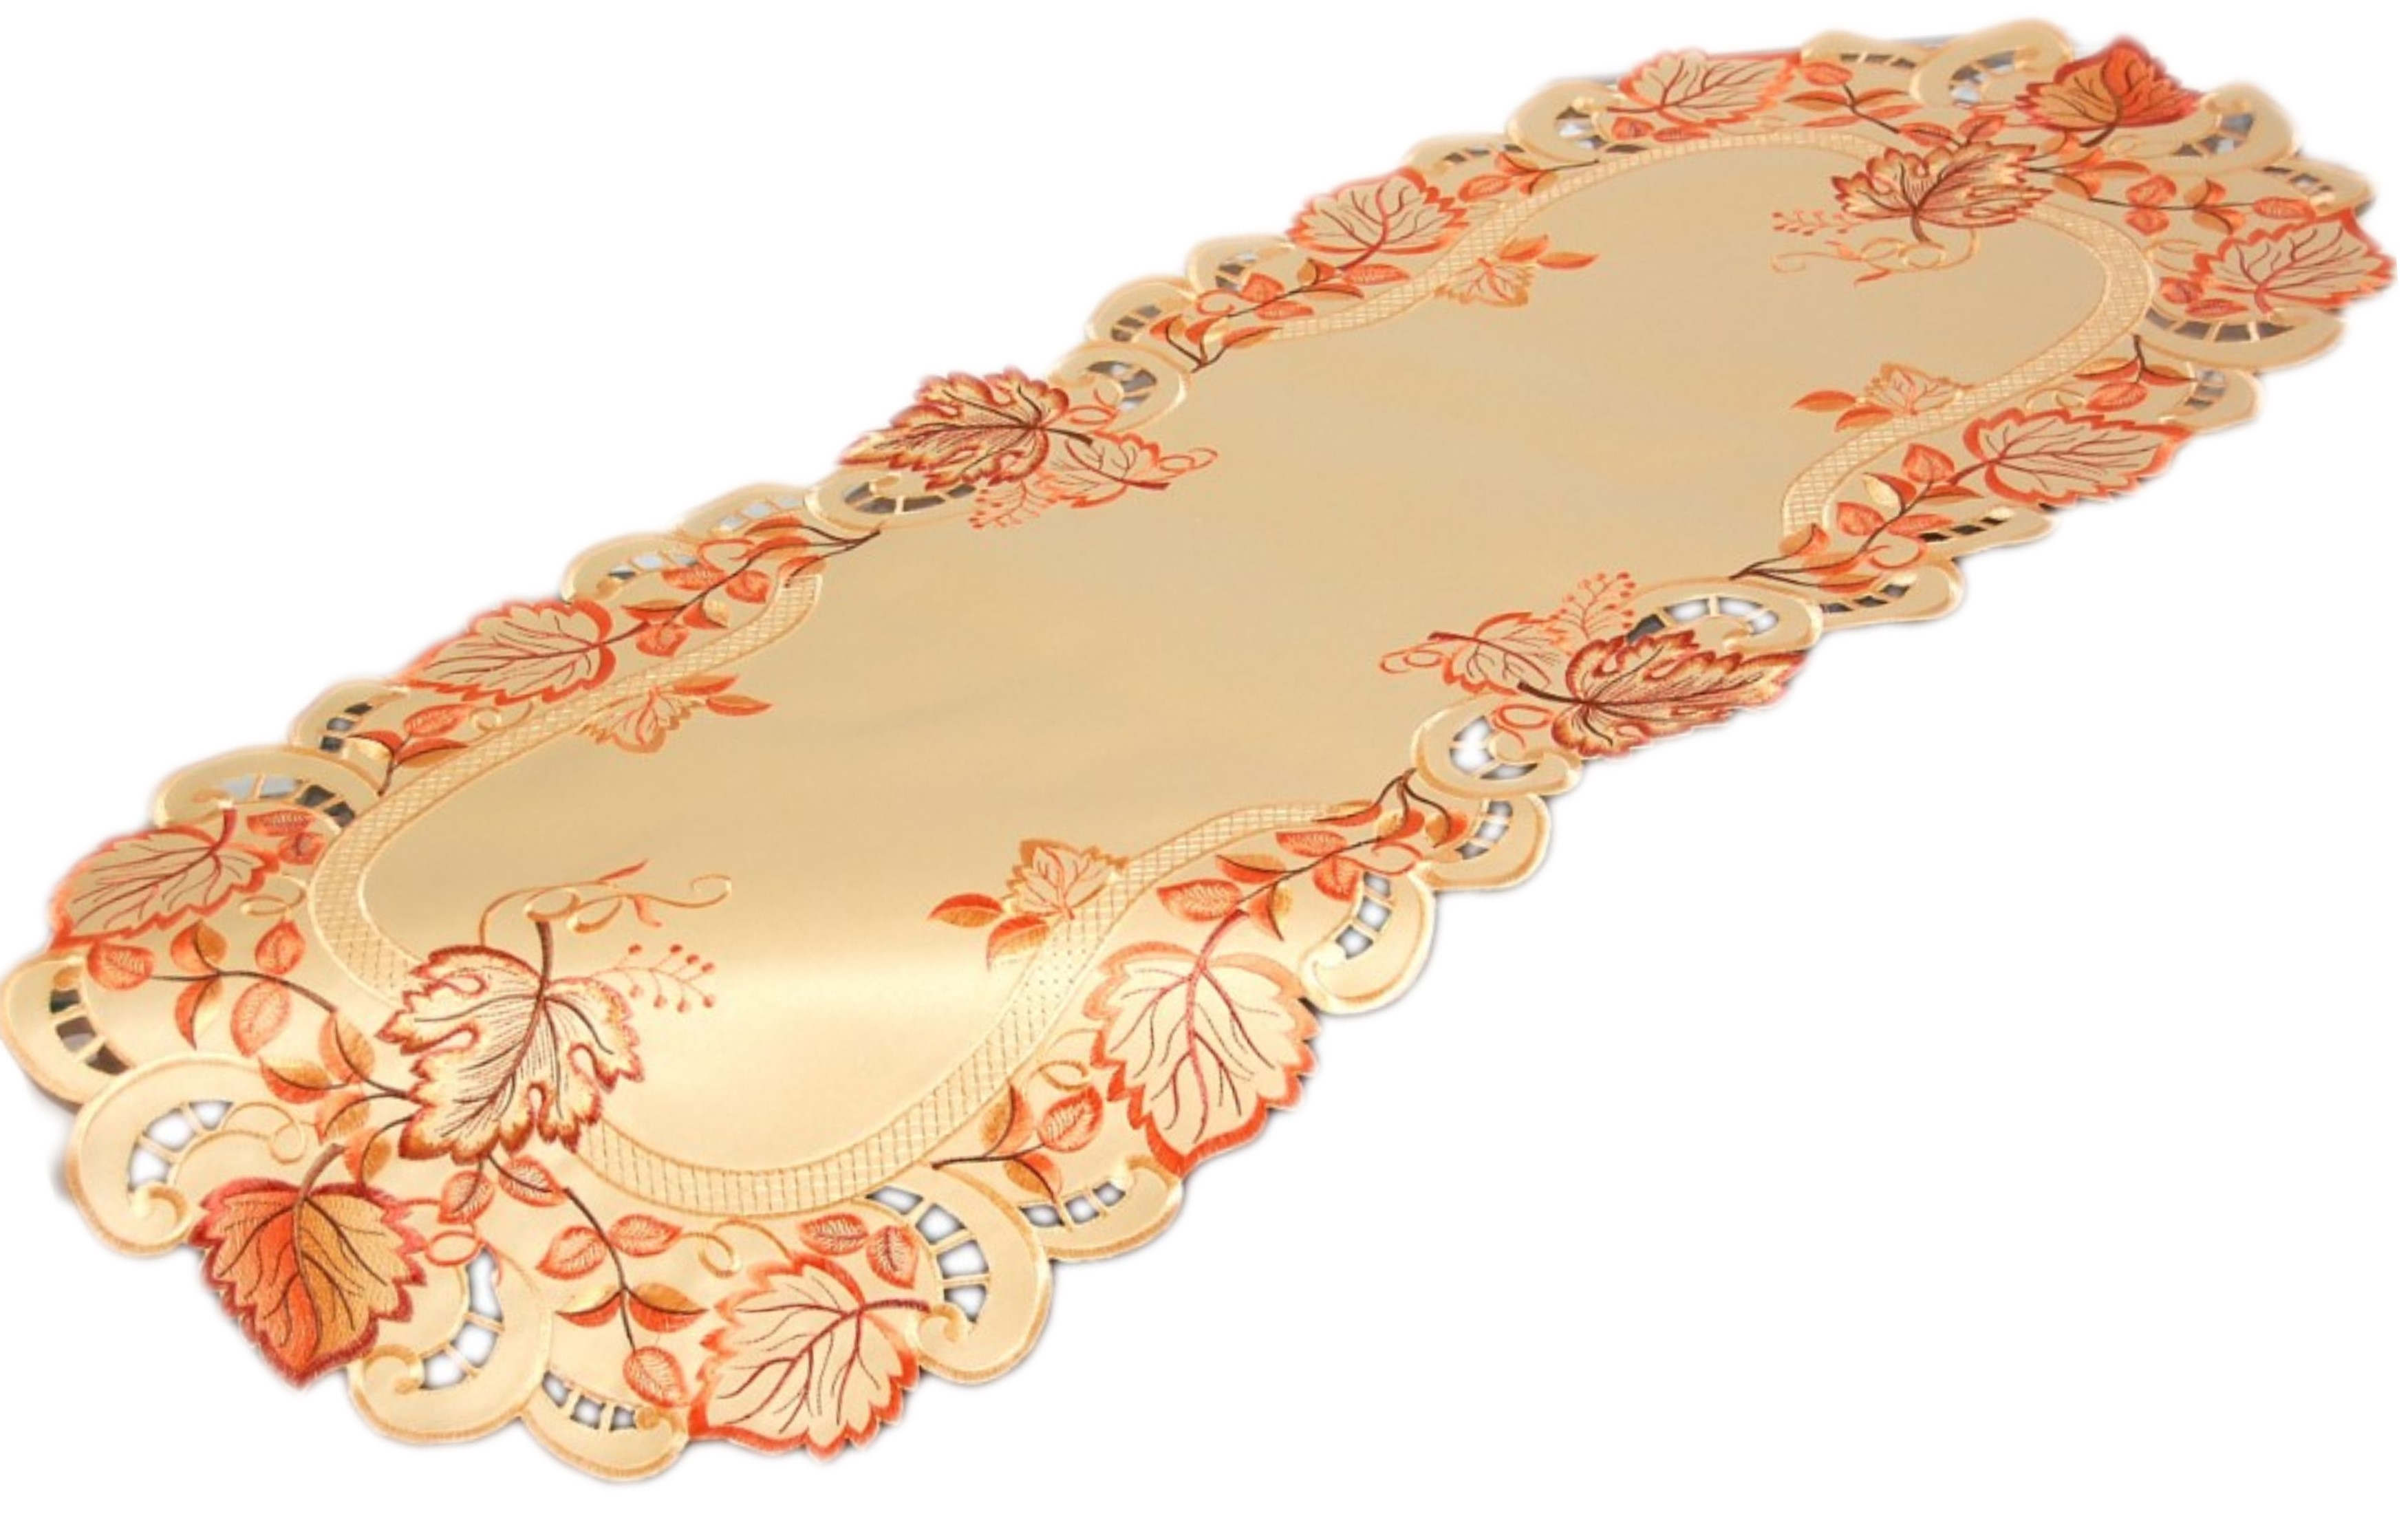 HERBST Tischdecke Tischläufer Mitteldecke Deckchen Decke Läufer Stickerei  Orange | eBay